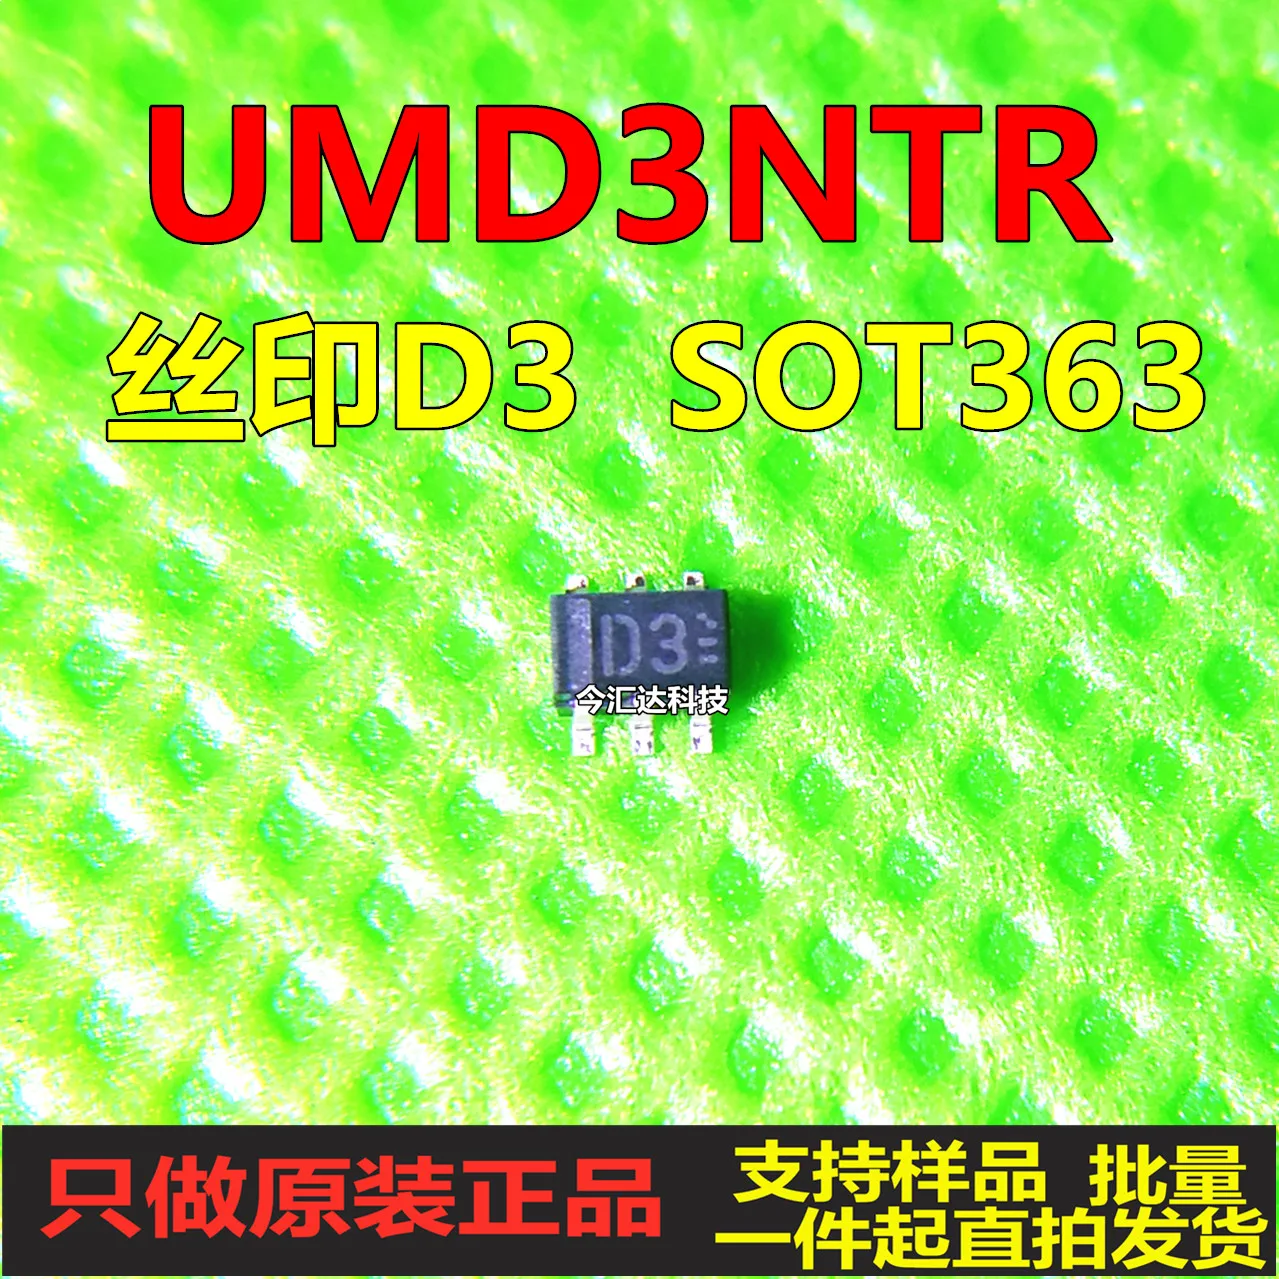 

30 шт. Оригинальный Новый 30 шт. Оригинальный Новый UMD3NTR UMD3N UMD3 трафаретная печать D3 SOT-363-6 биполярный транзистор чип